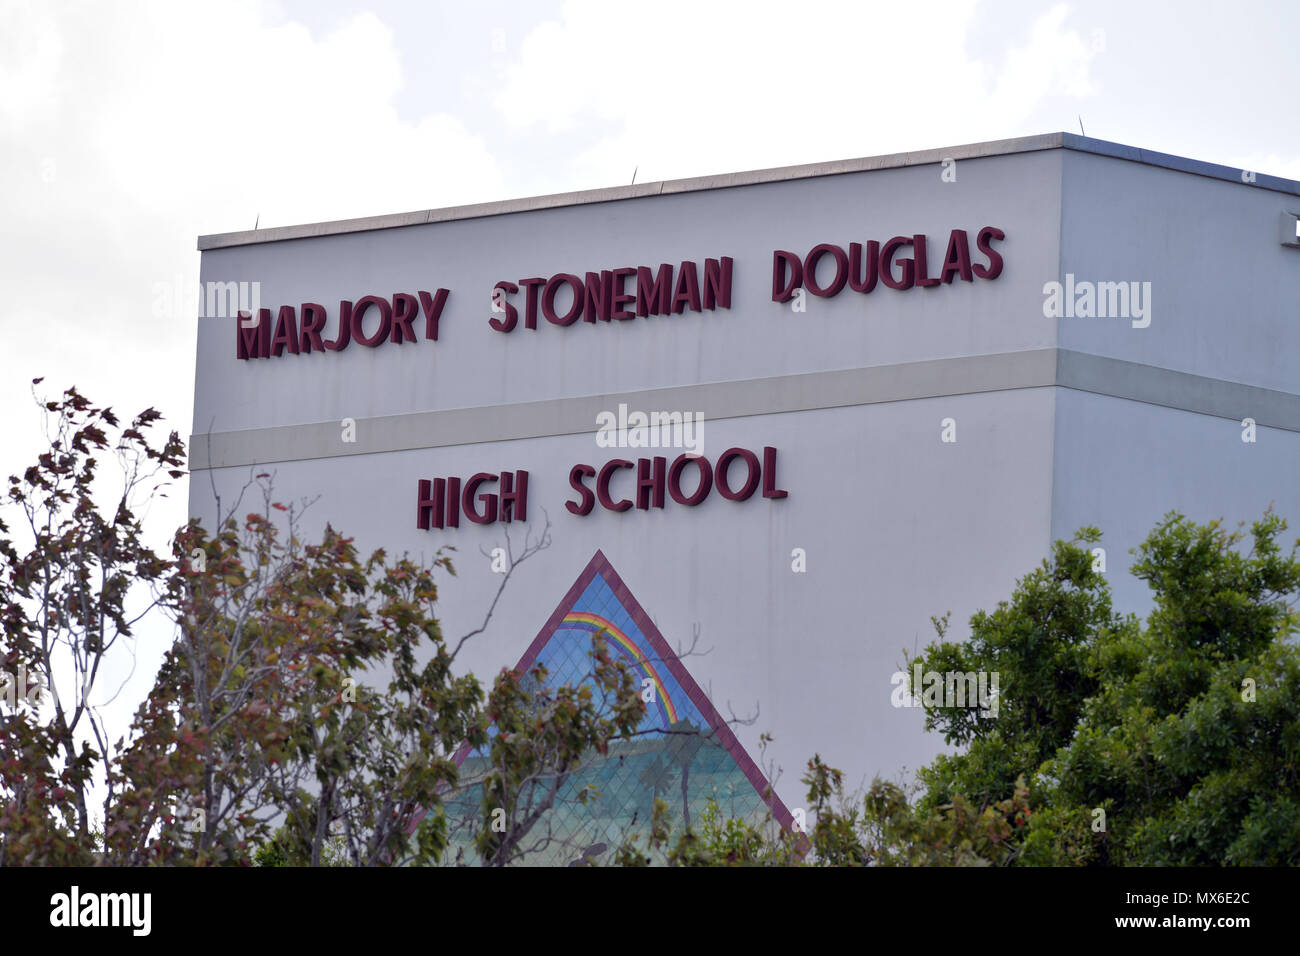 PARKLAND, FL - Februar 23 Schüsse erklang für 4 Minuten als bewaffnete Stellvertretender gewartet, wo 17 Menschen ermordet wurden. Schüler und Lehrer zurück zu Marjory Stoneman Douglas High School am 23. Februar in Parkland, Florida 2018. Personen: Marjory Stoneman Douglas High School Stockfoto